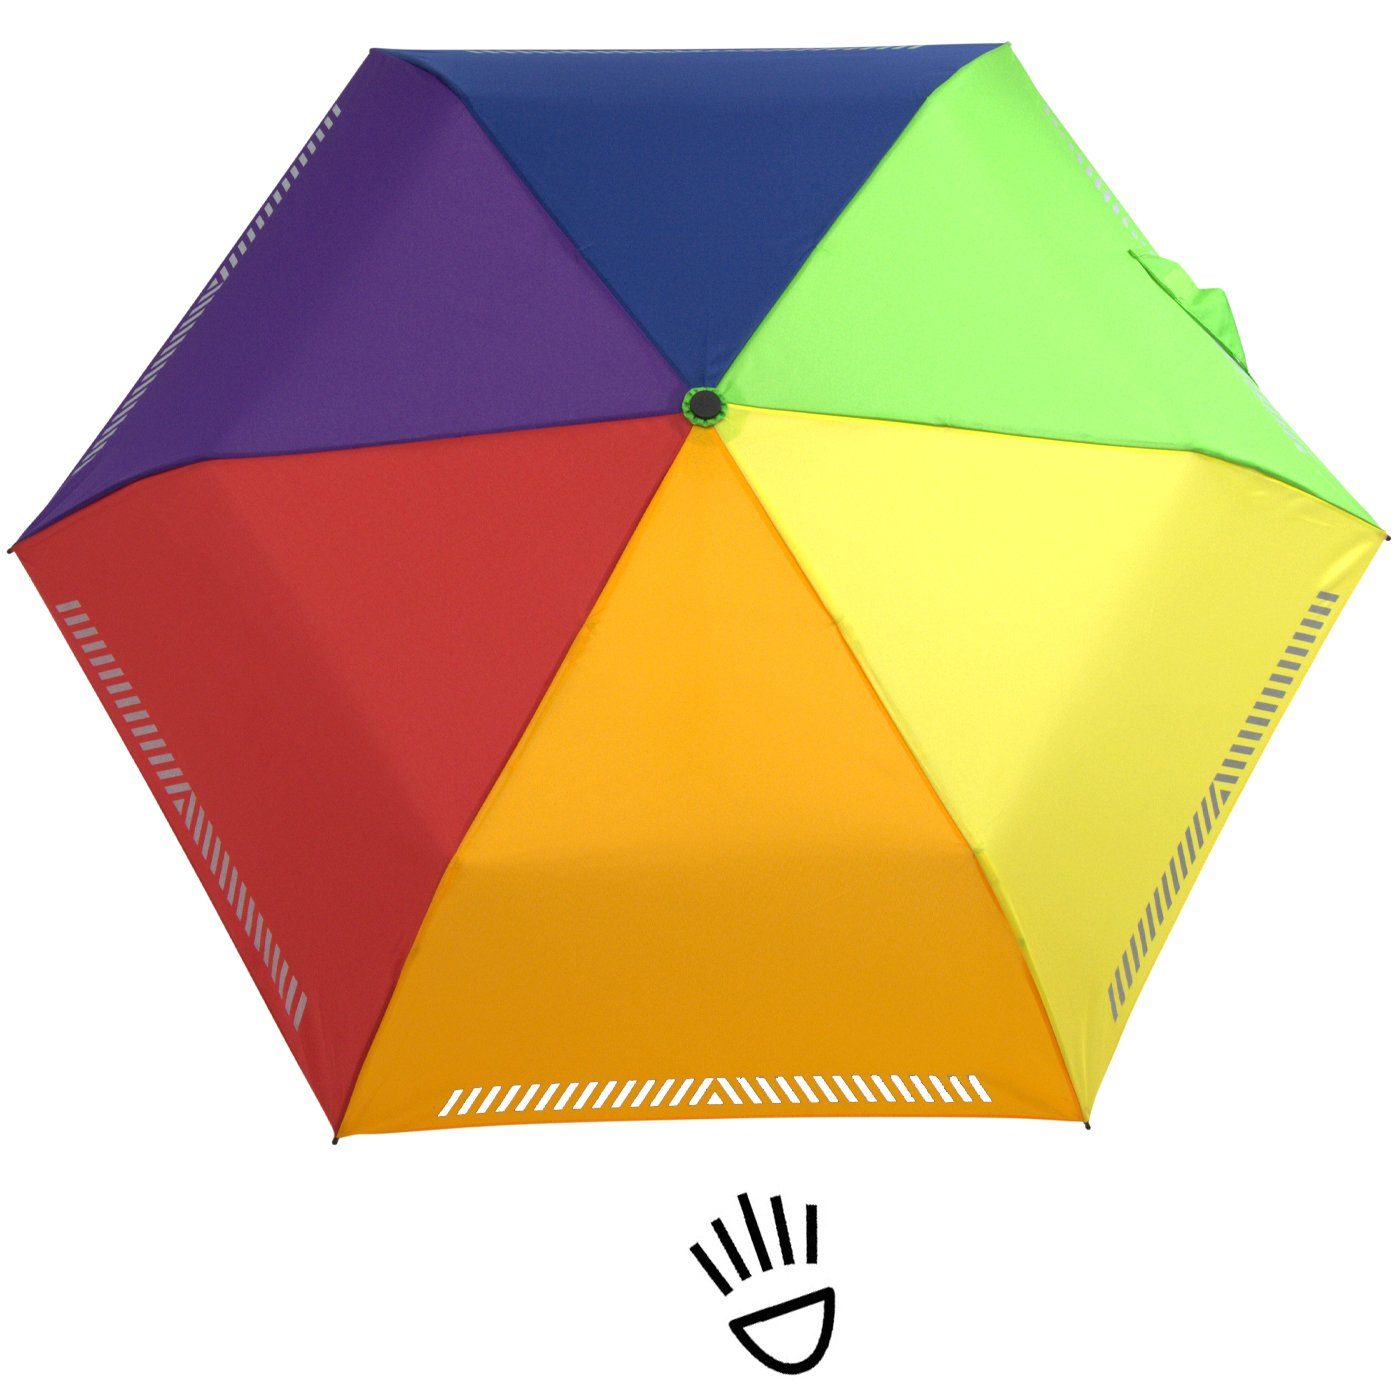 iX-brella Taschenregenschirm Kinderschirm Sicherheit Reflex-Streifen reflektierend, mit Auf-Zu-Automatik, Regenbogen - durch